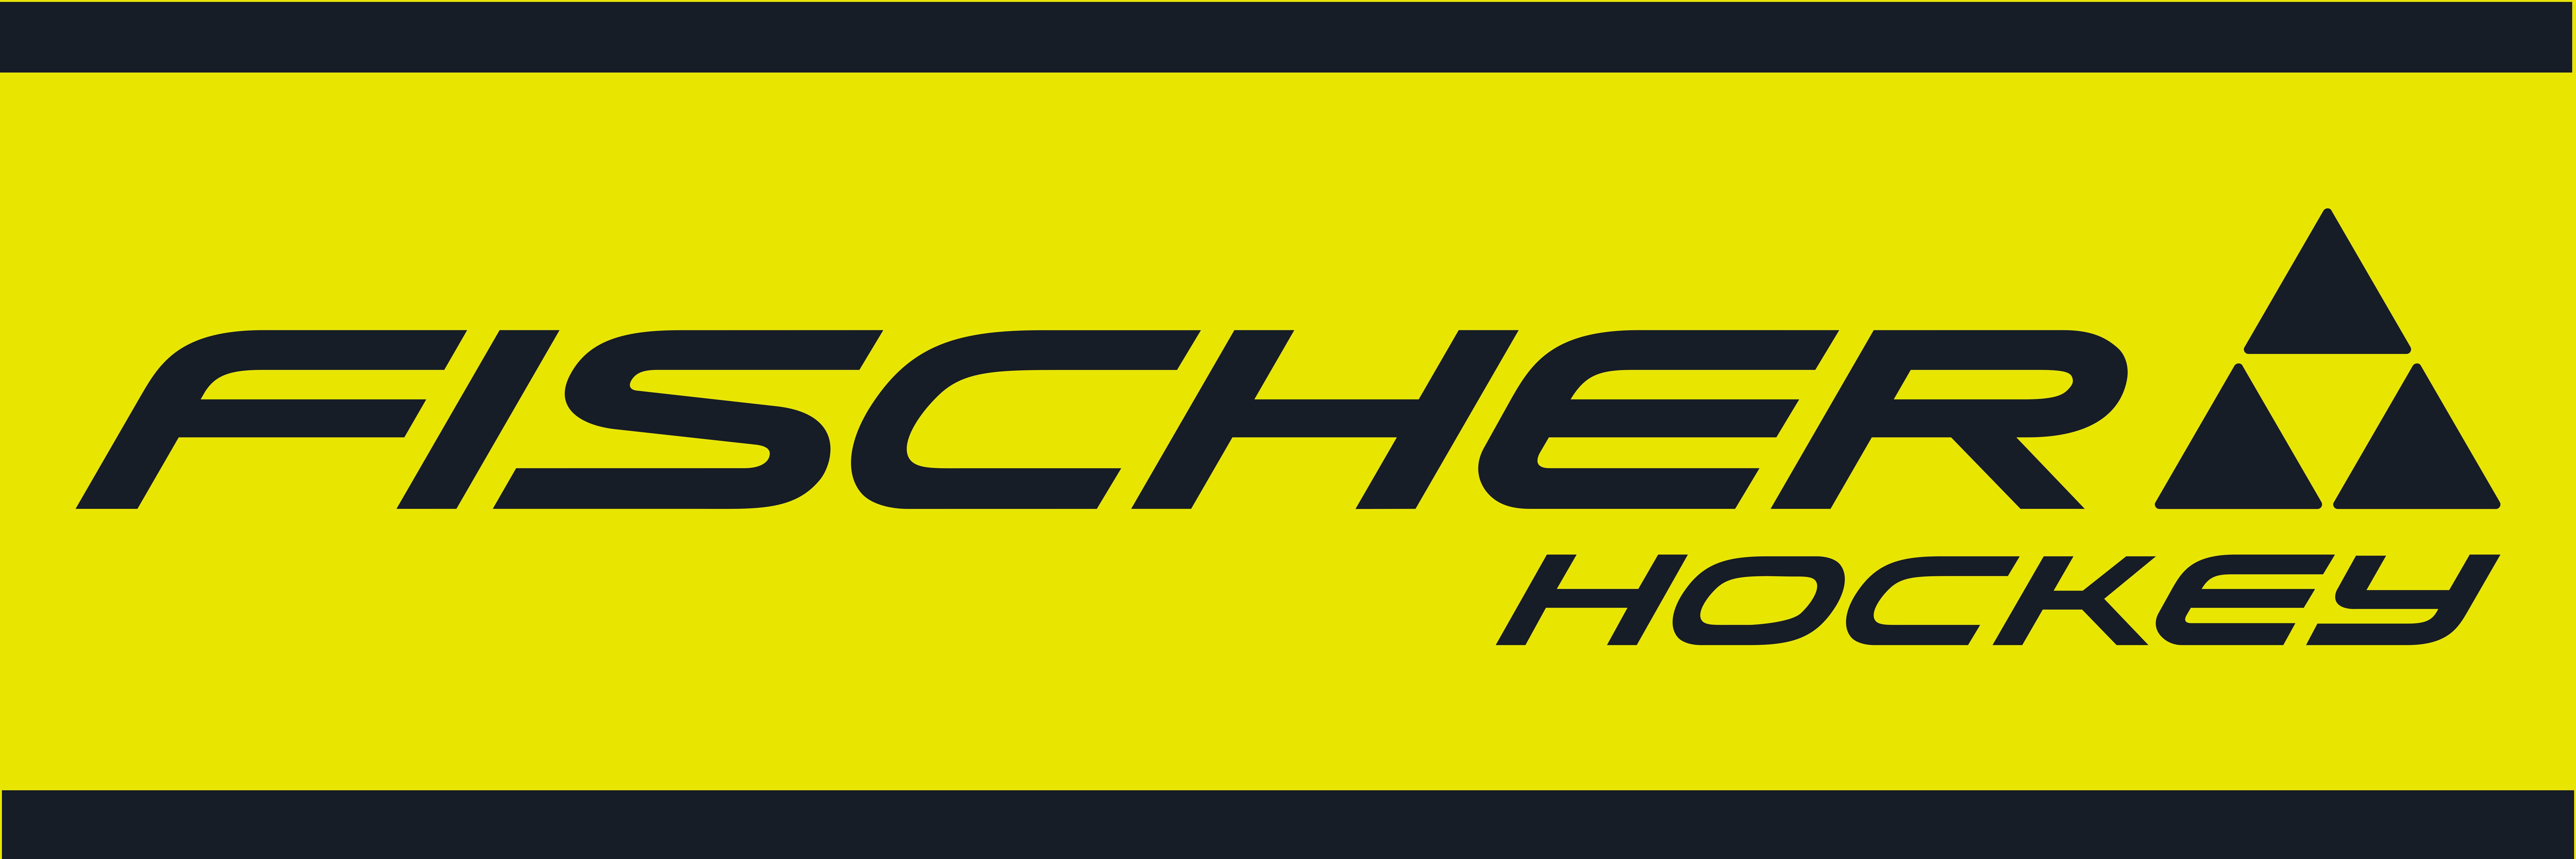 Rockies Rockies | Fischer Hockey the the Hockey of Fischer of